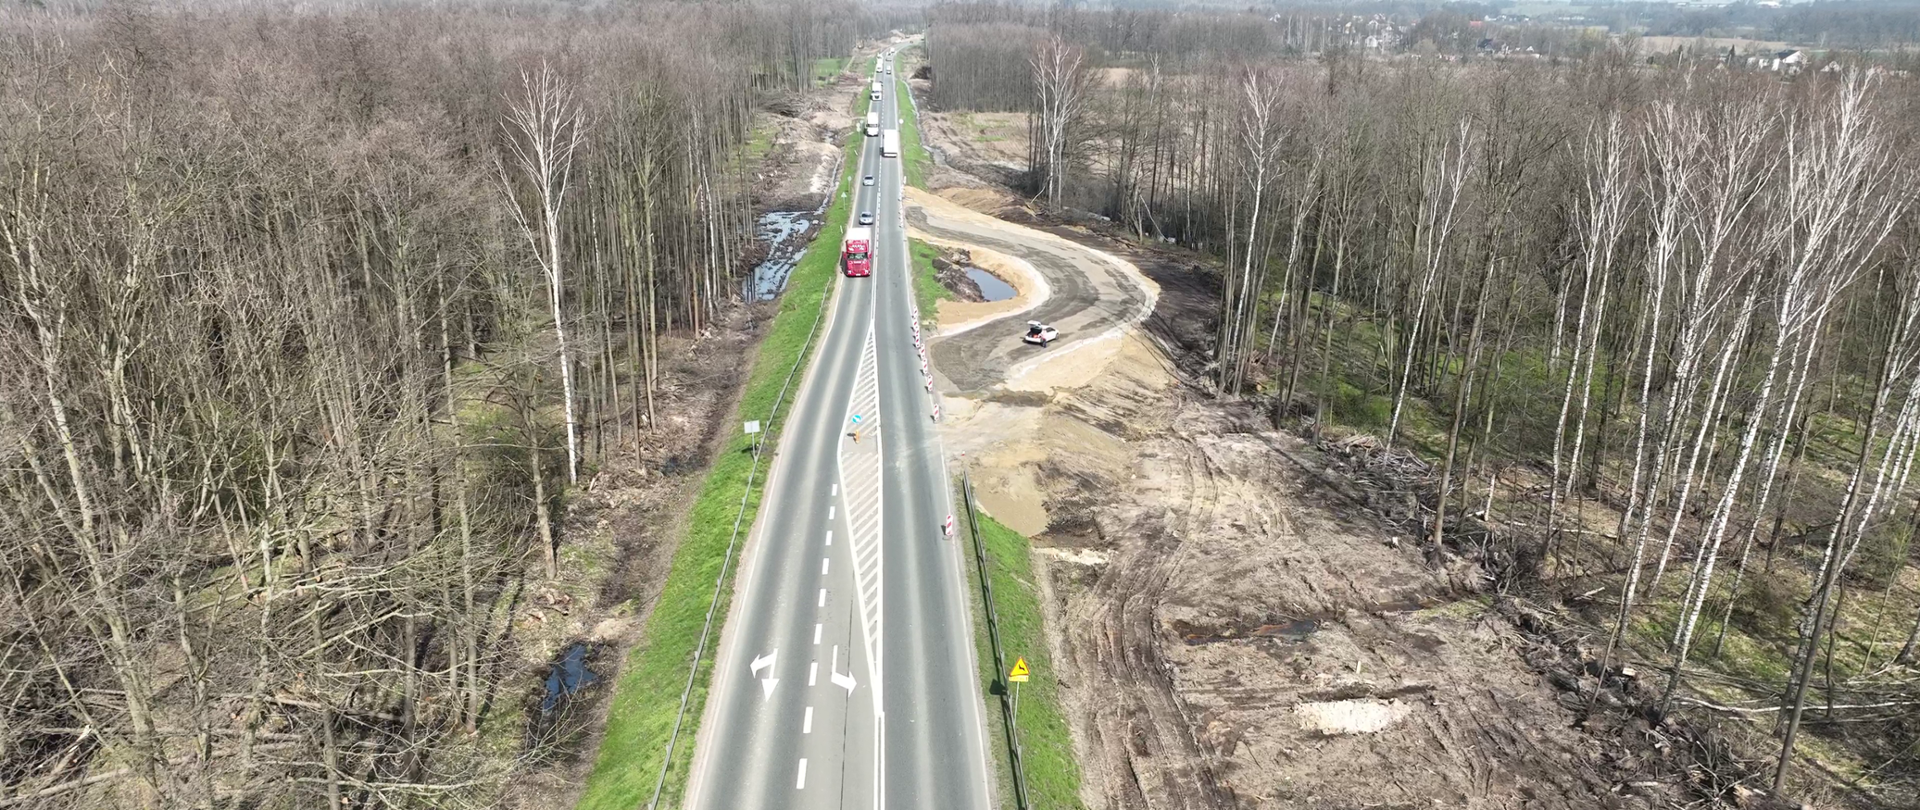 Rozbudowa DK45 na trasie Krapkowice - Rogów Opolski